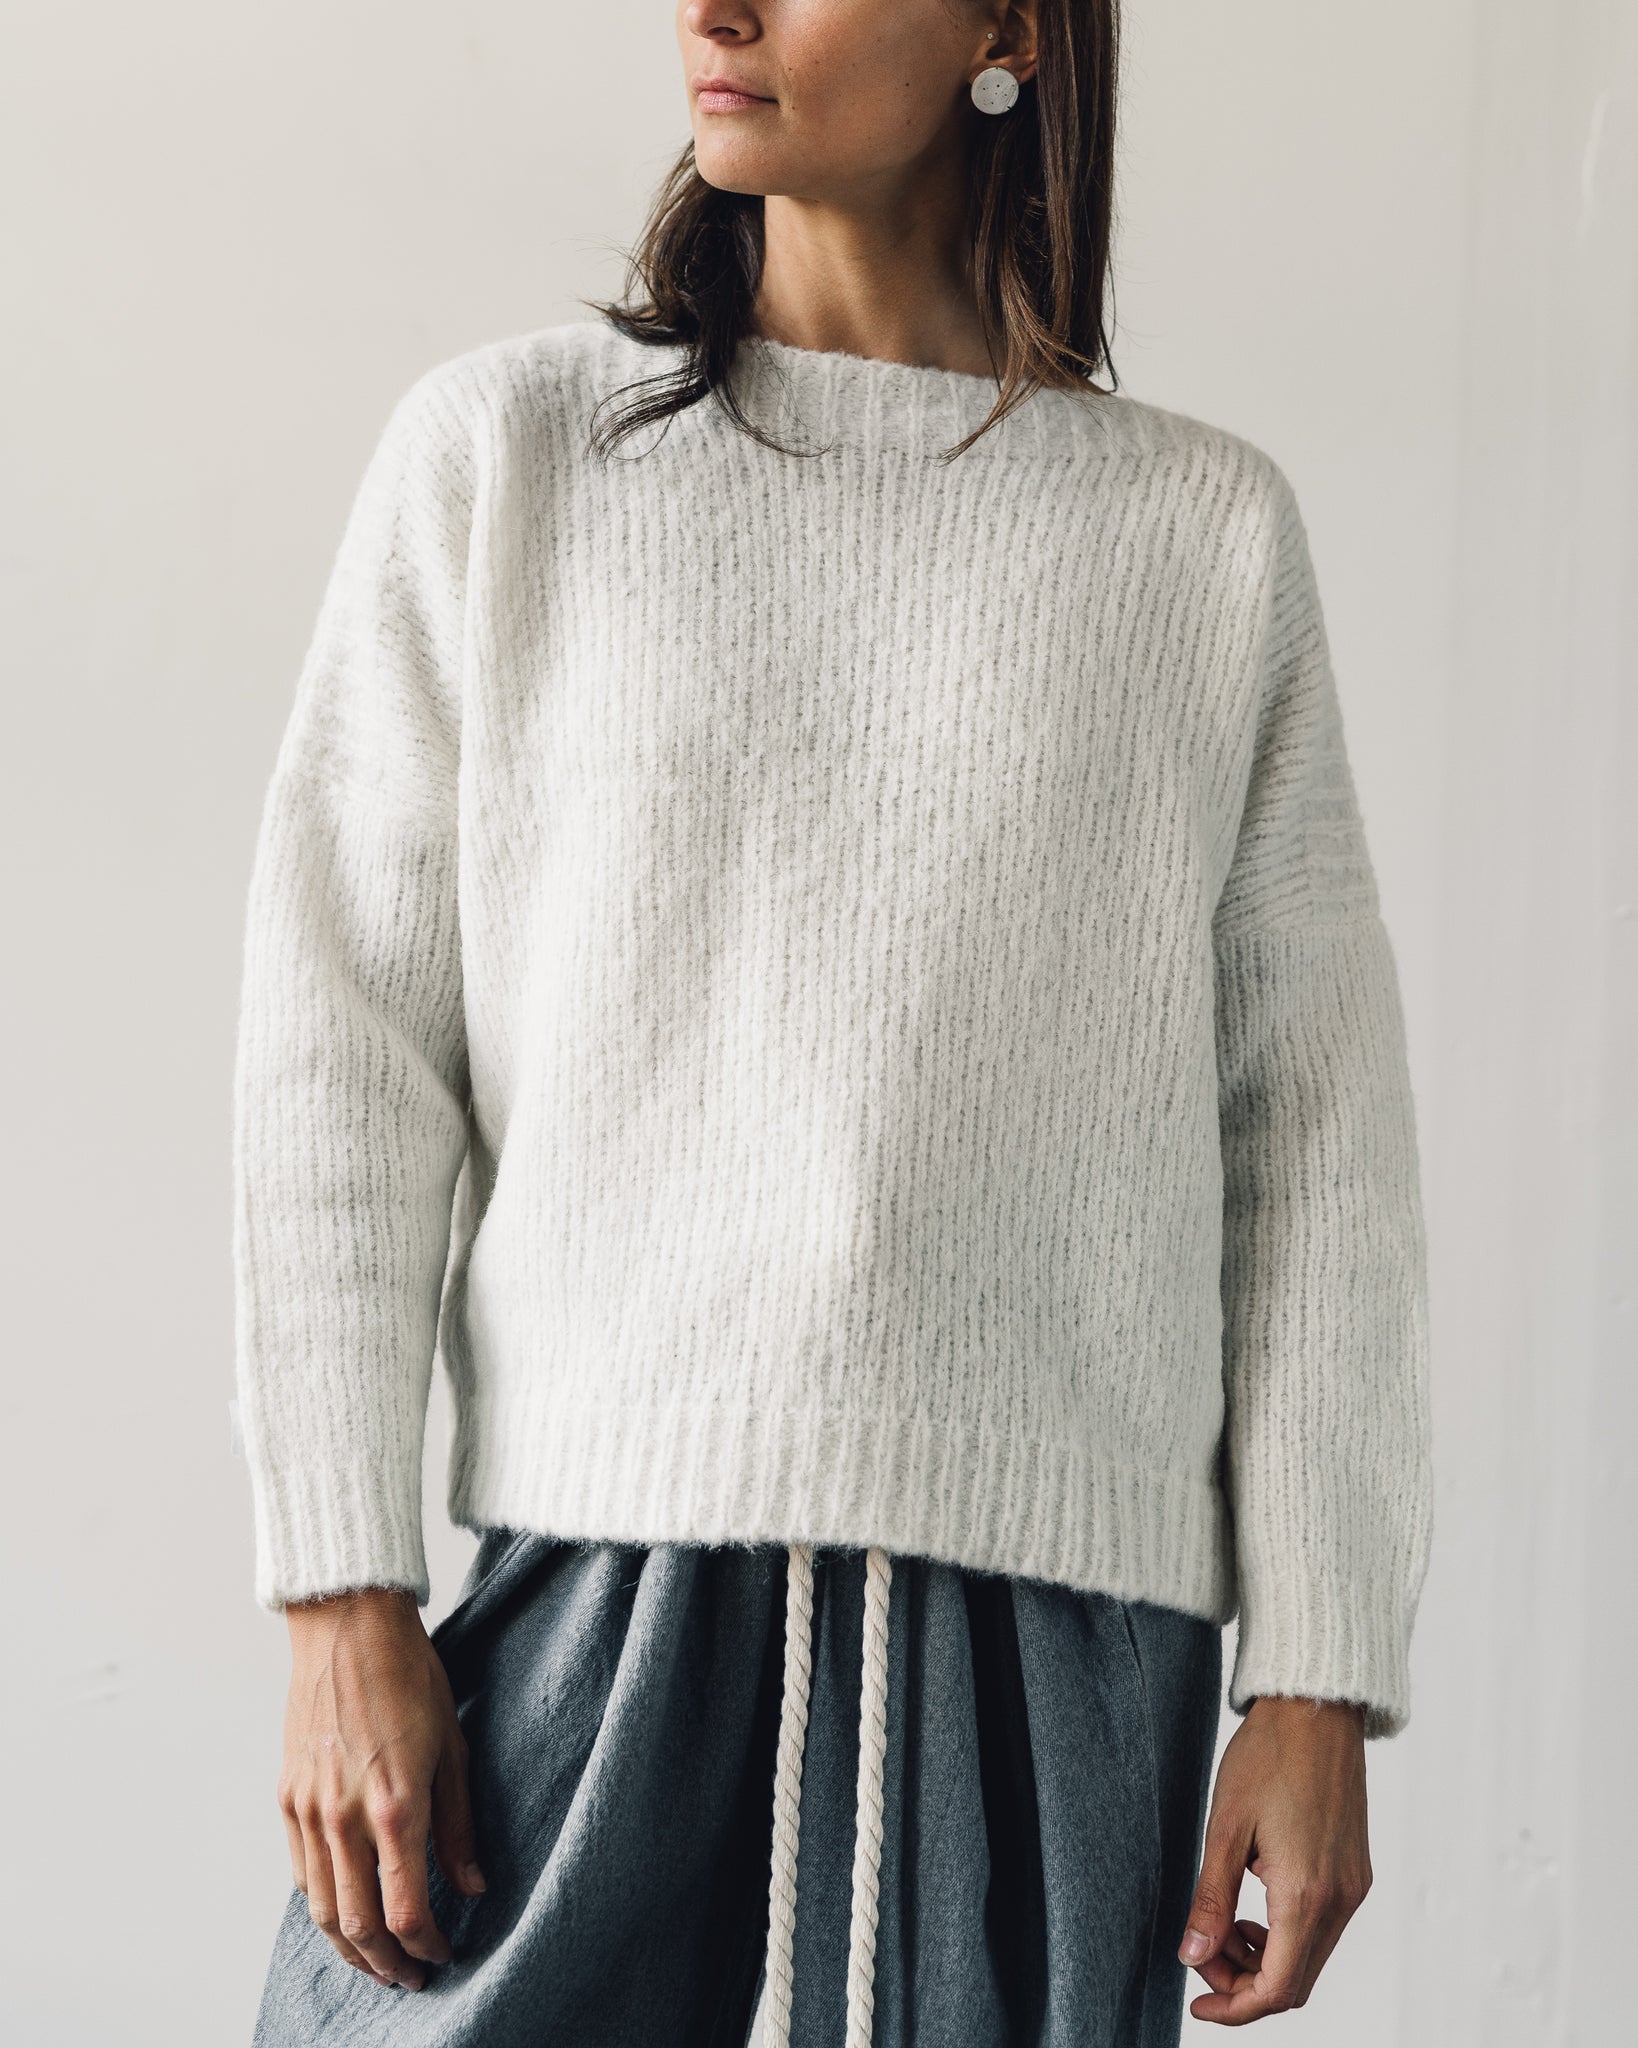 Delphine Tere Sweater